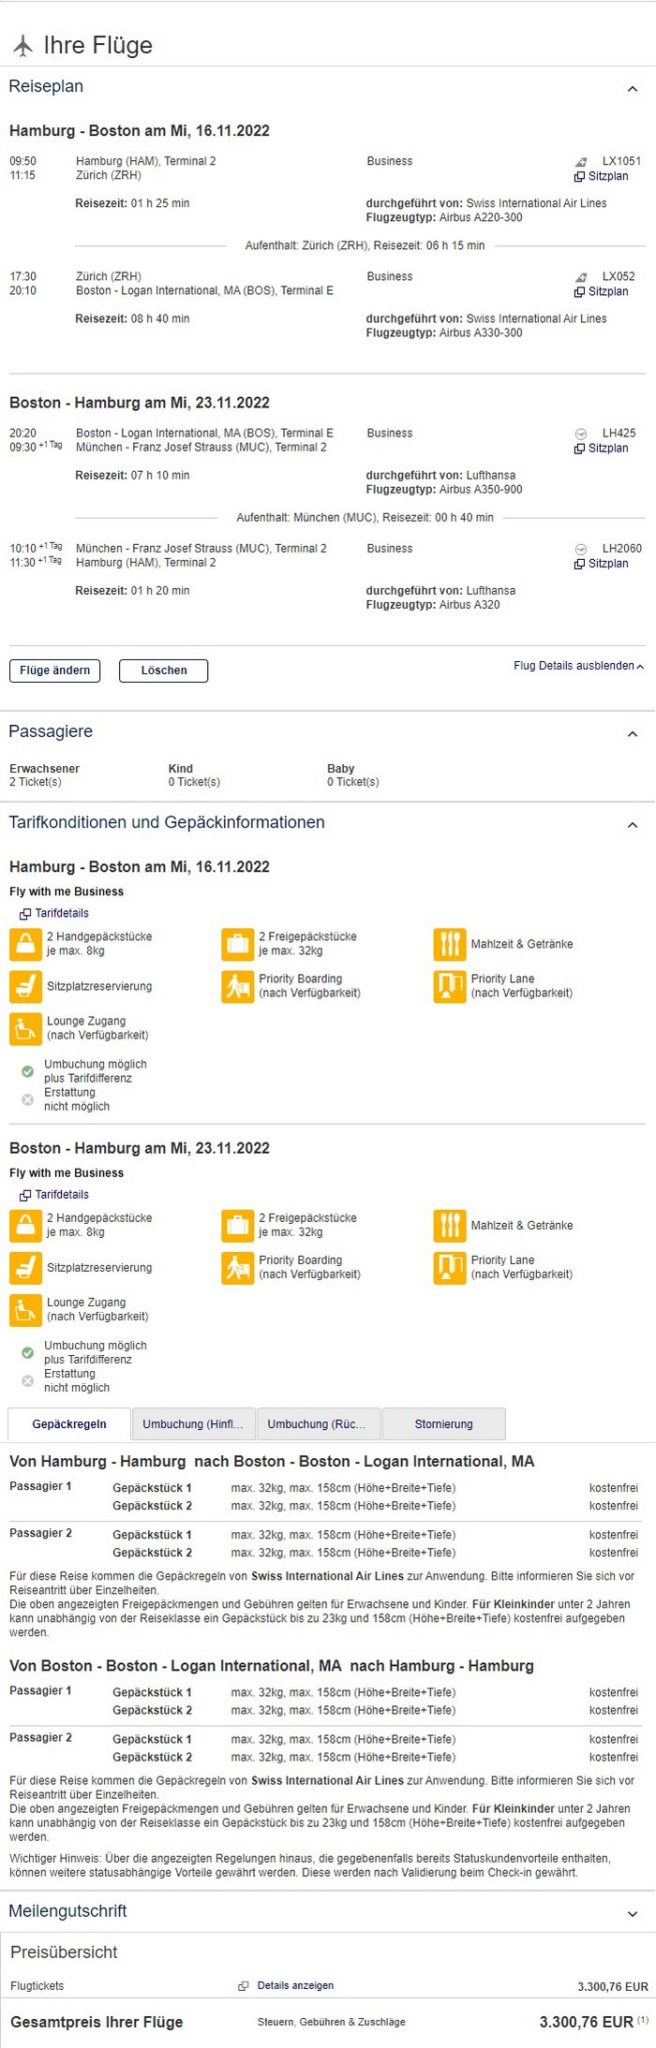 Preisbeispiel für weltweite Partnertarif von Hamburg nach Boston in der Lufthansa und Swiss Business-Class bei Buchung bis 14.02.2022